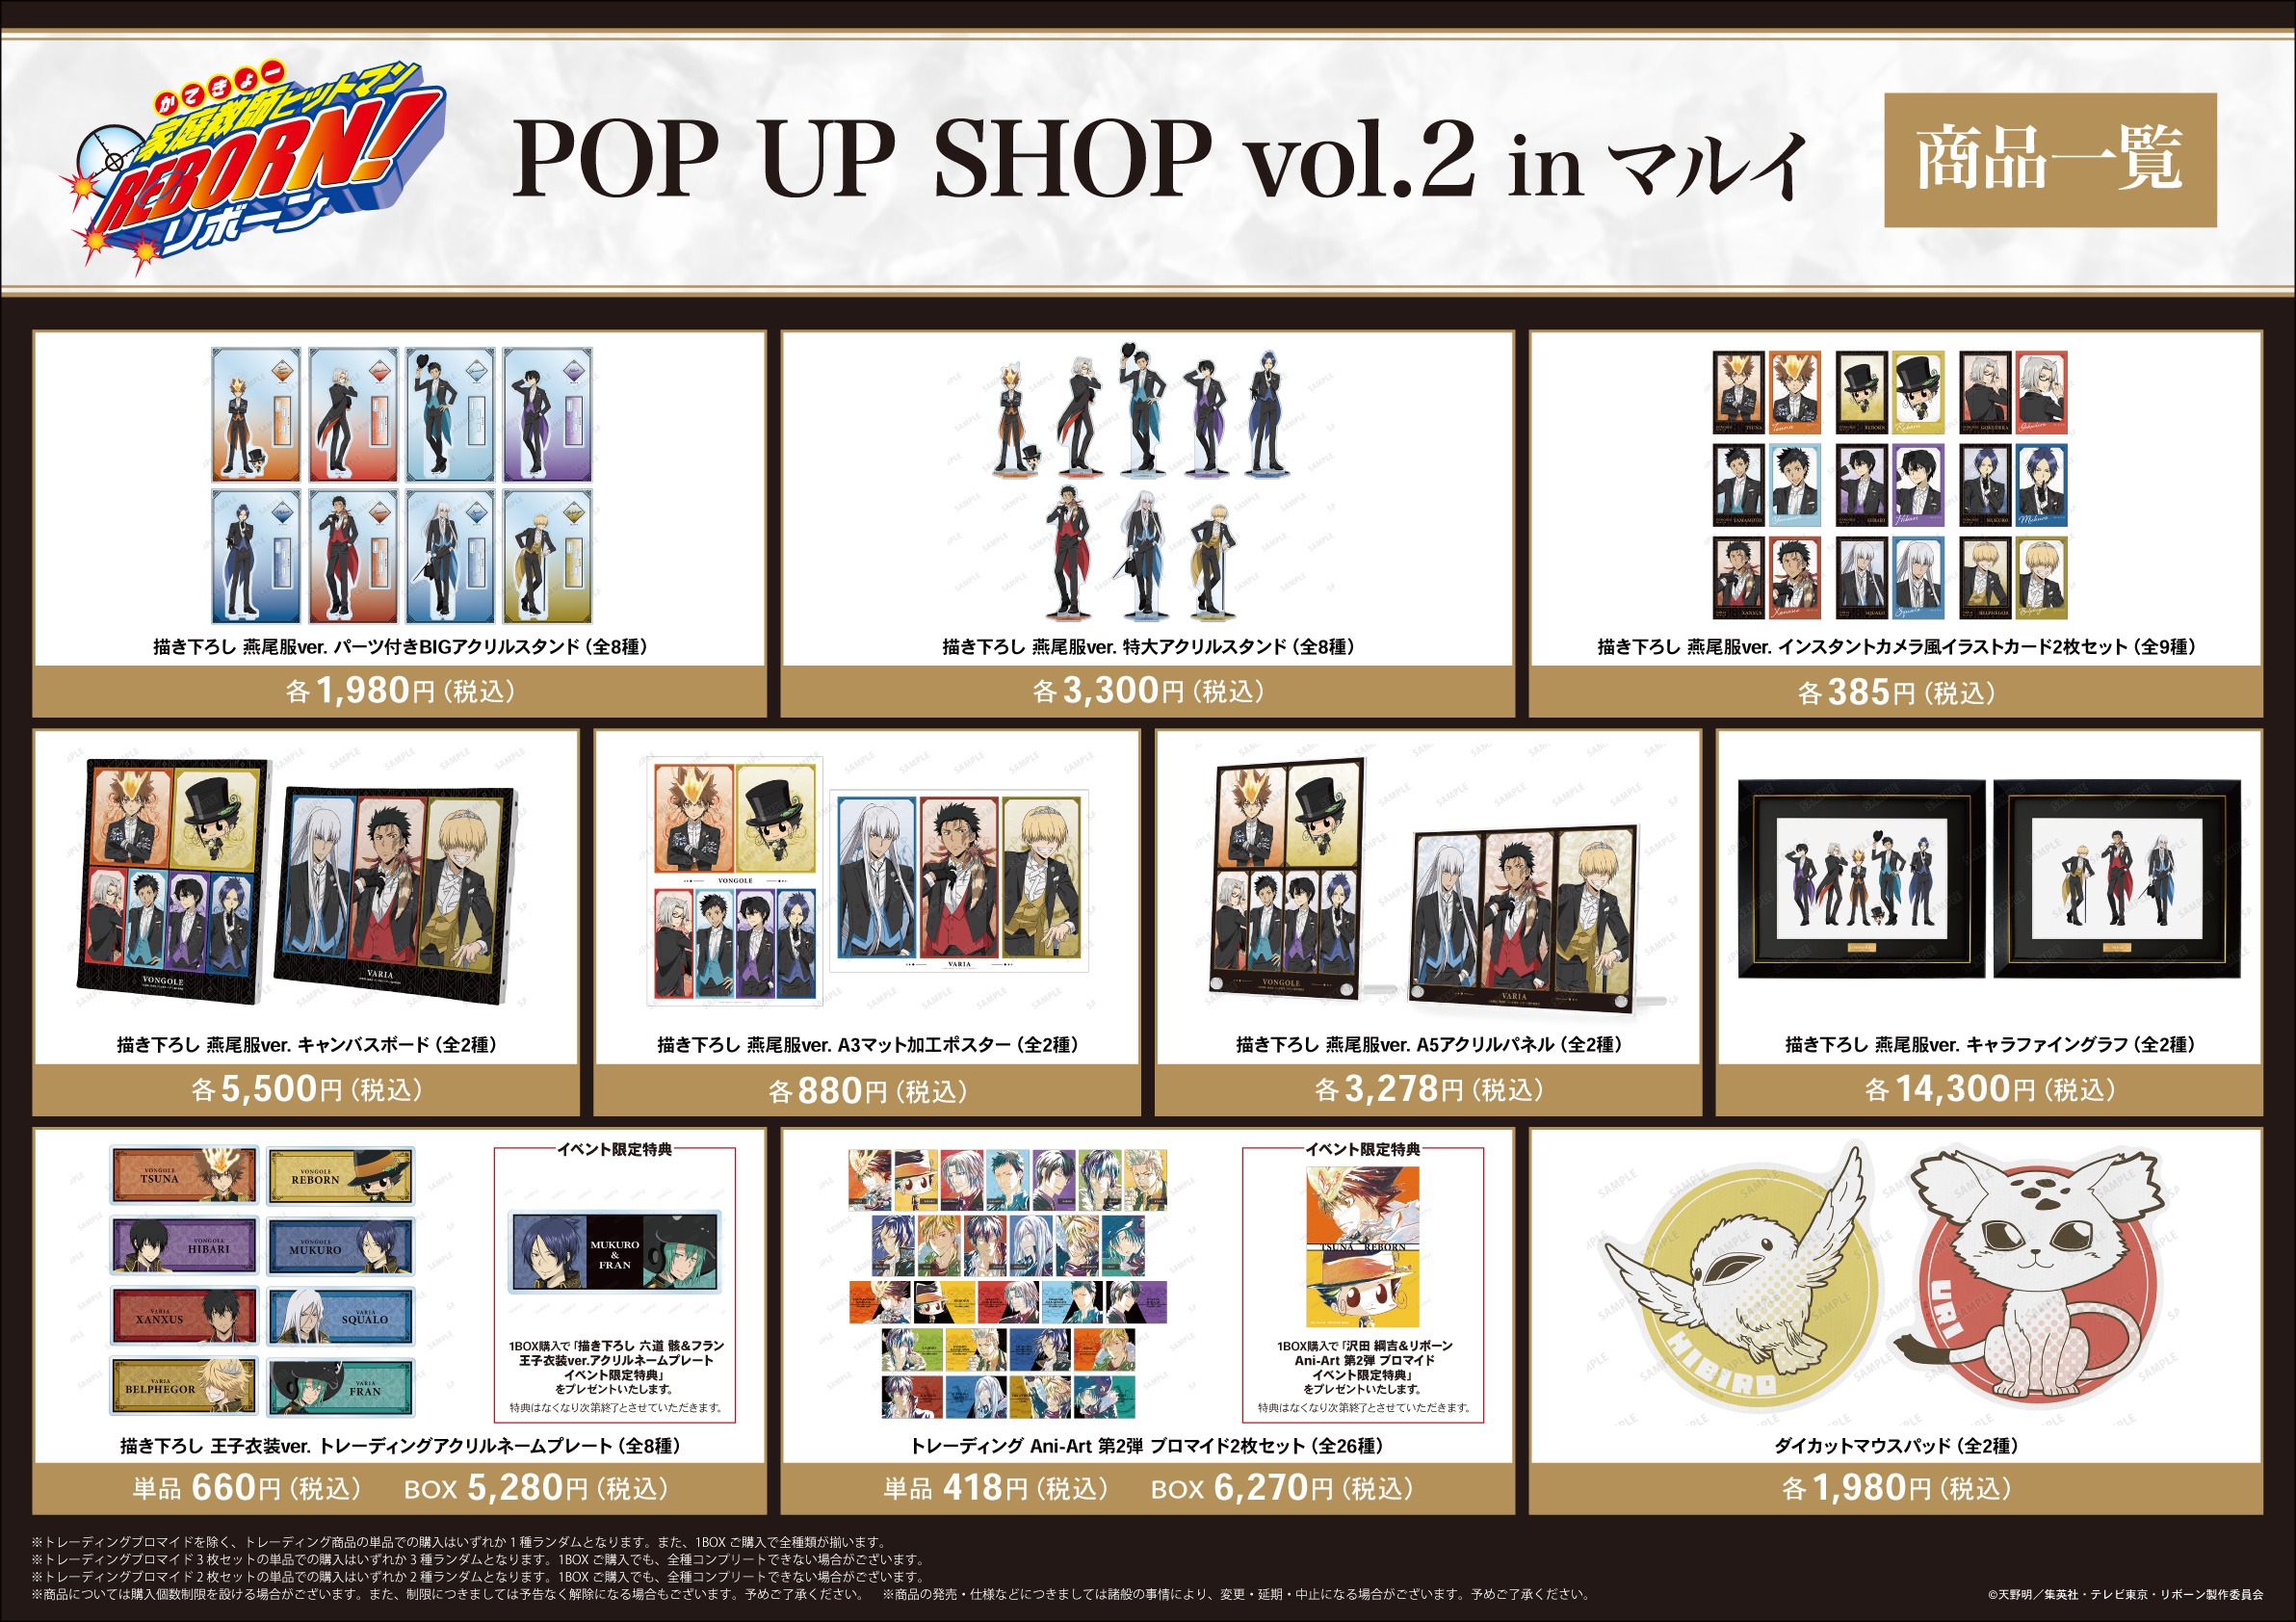 「『家庭教師ヒットマンREBORN!』POP UP SHOP vol.2 in マルイ」イベント先行販売グッズ情報